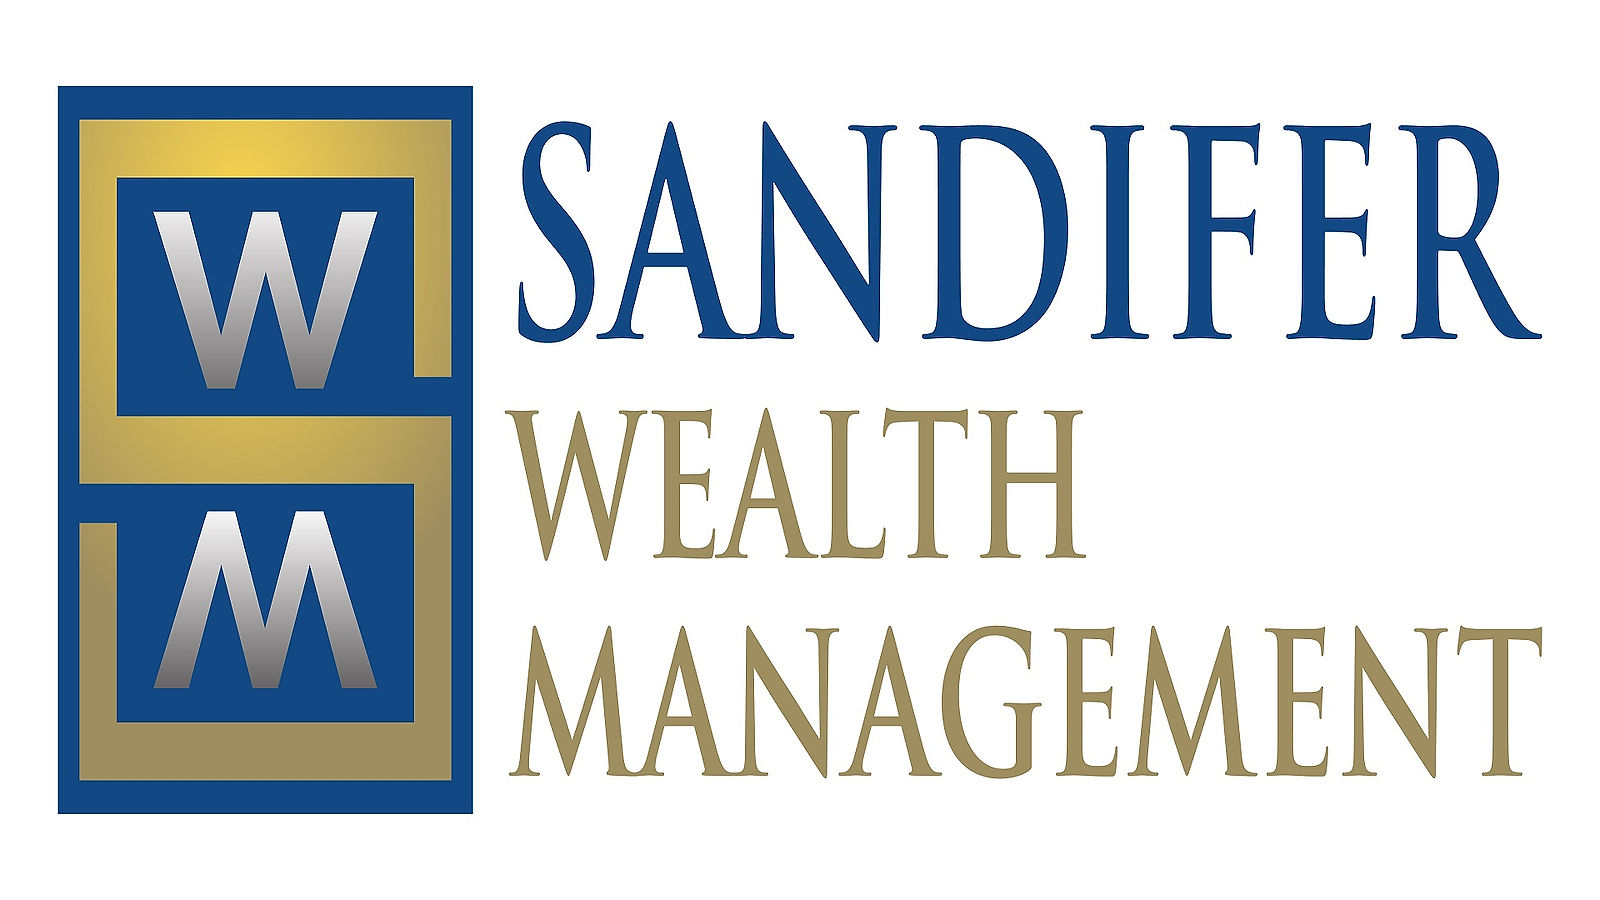 Sandifer Wealth Management